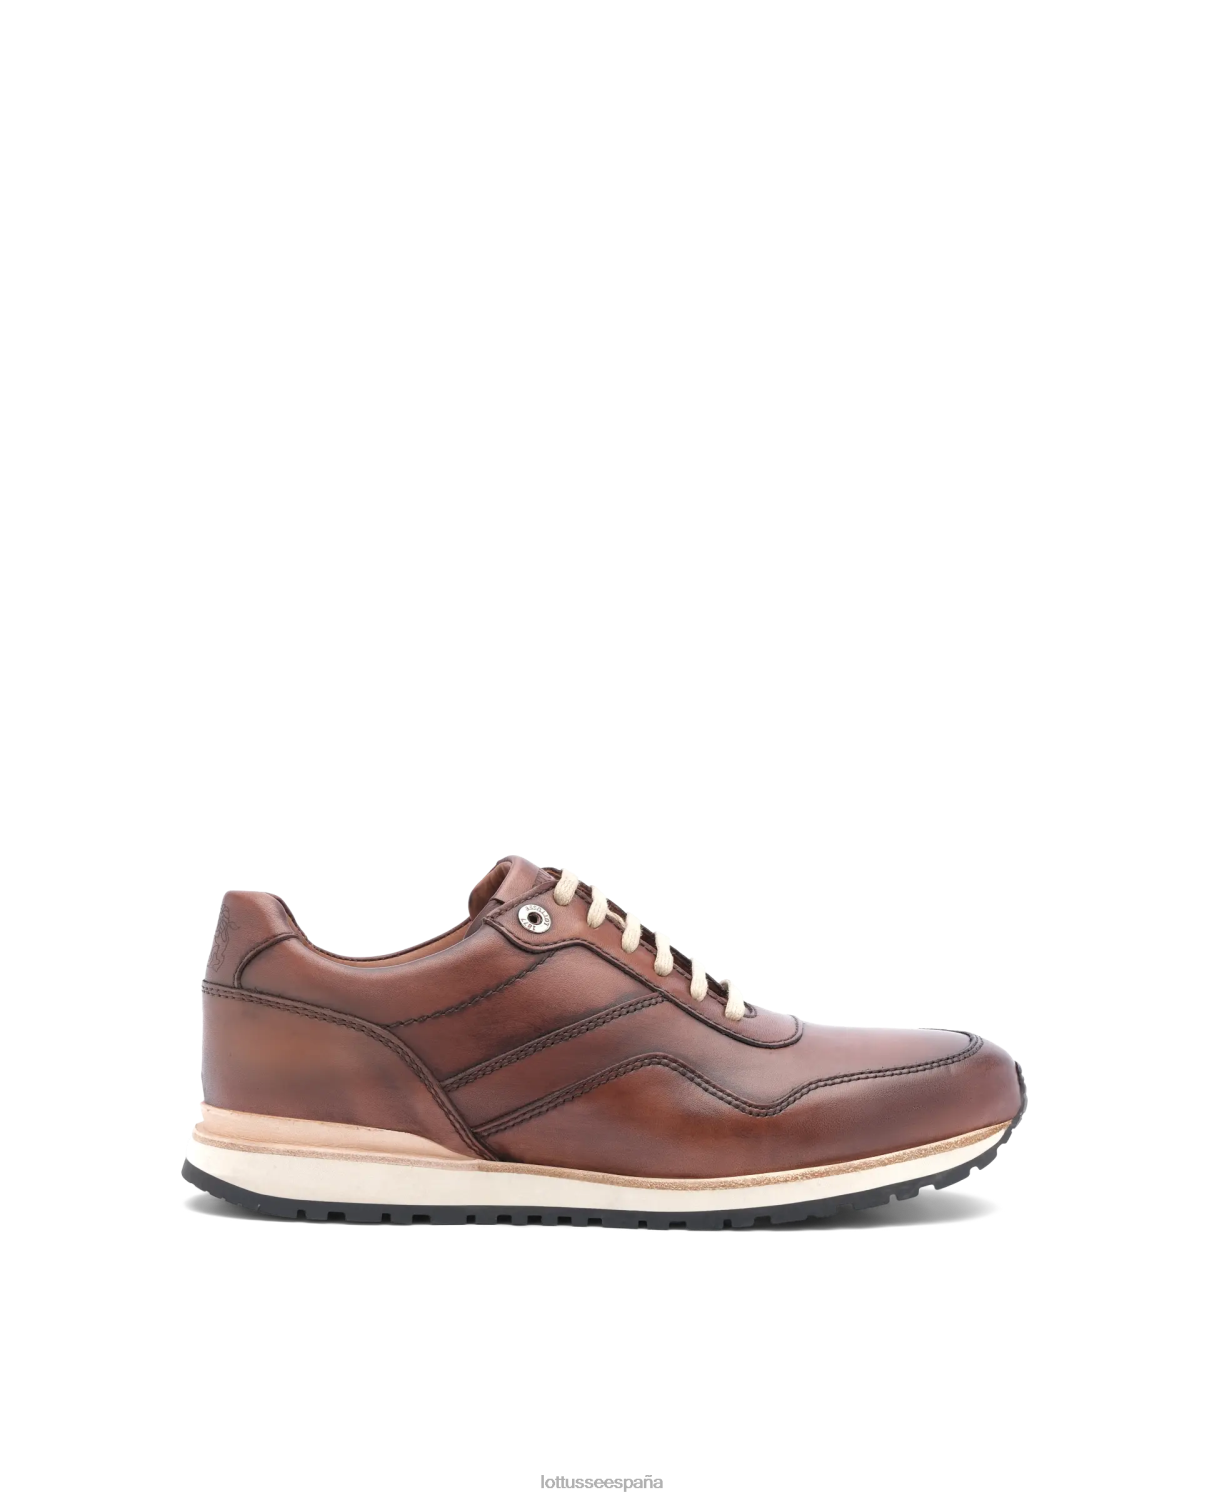 Lottusse zapatillas tokyo de becerro marrón hombres calzado V40NX188